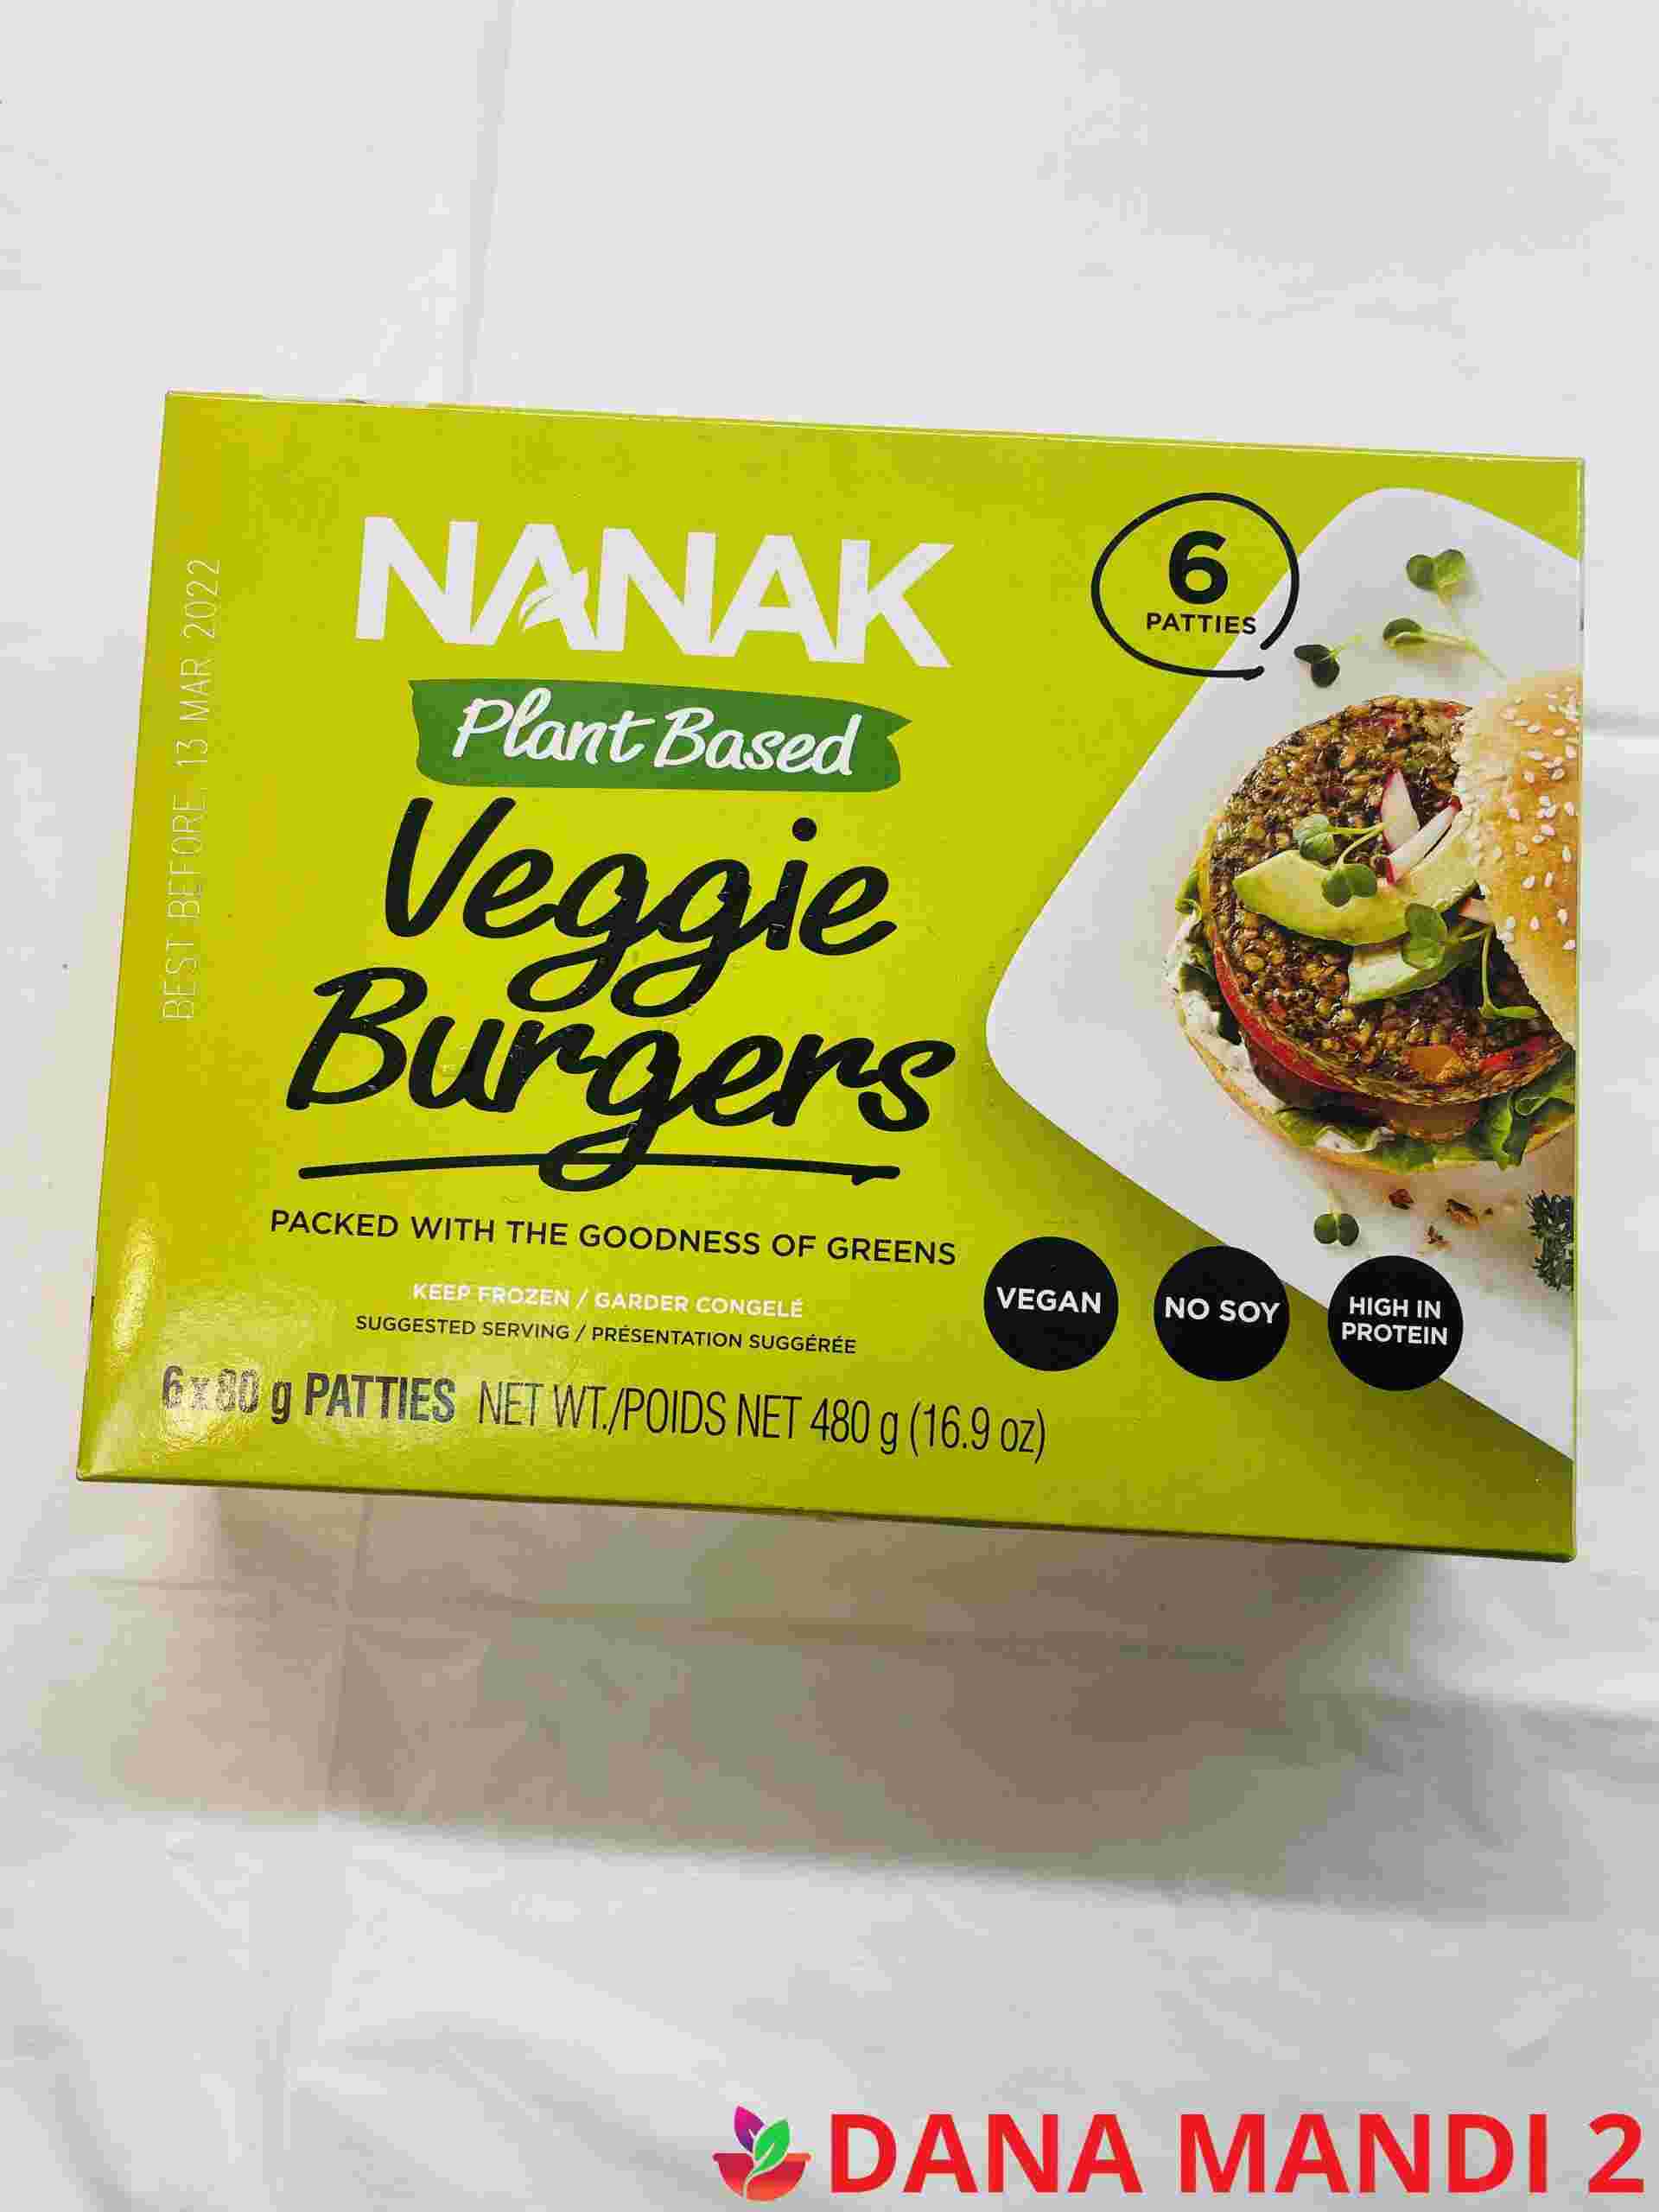 Nanak Plant Based Veggie Burgers 6 Pieces